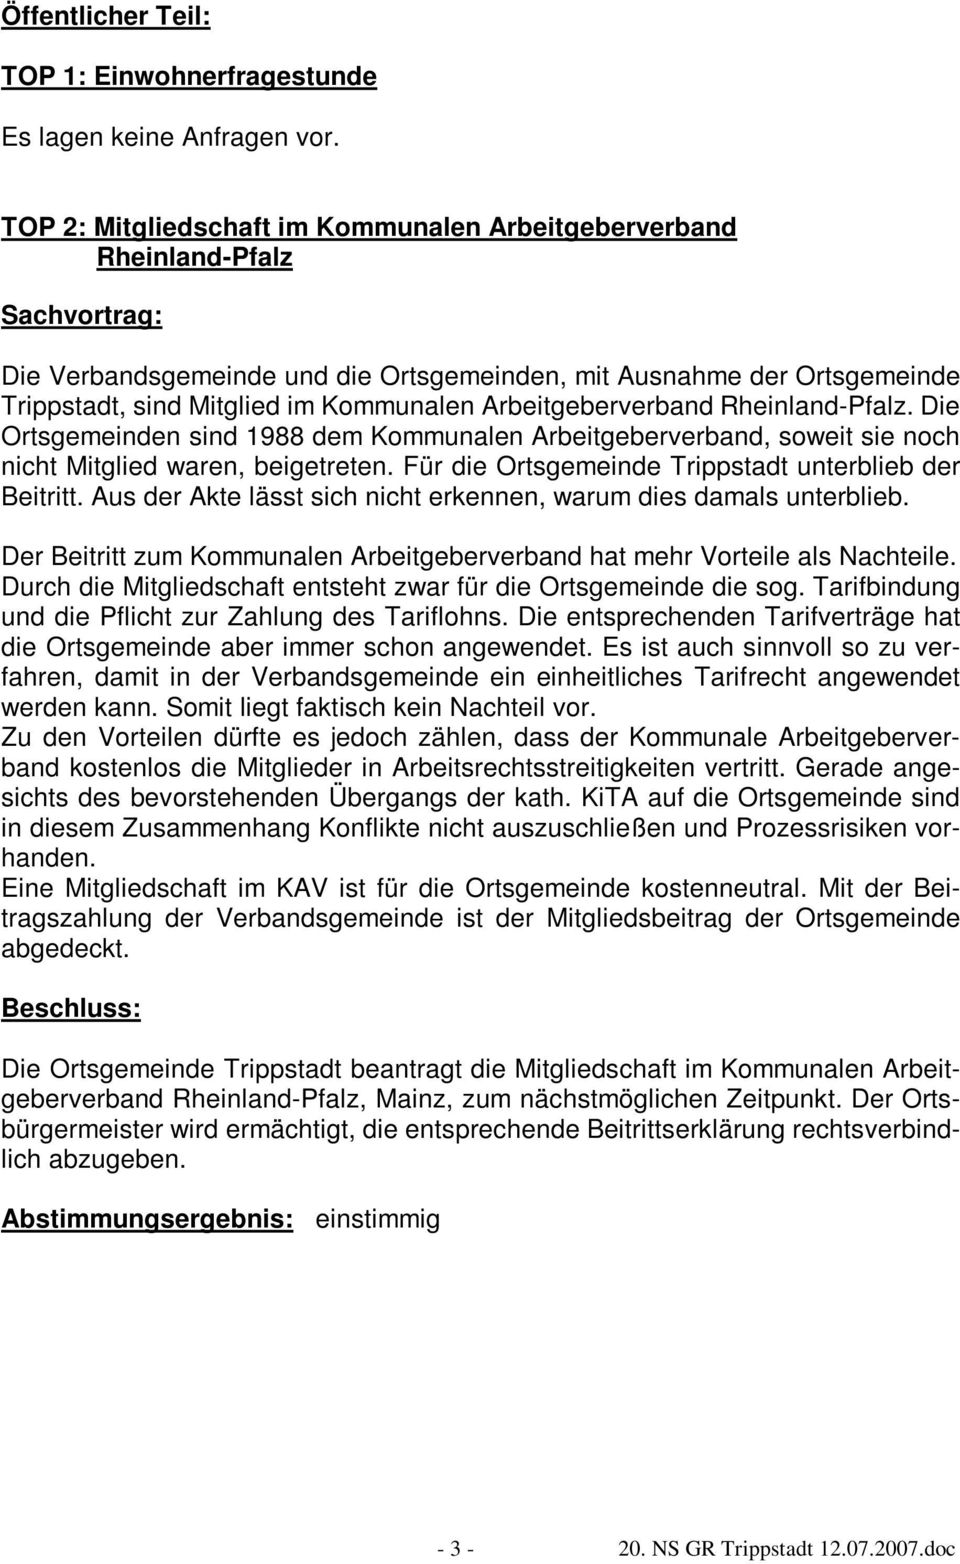 Arbeitgeberverband Rheinland-Pfalz. Die Ortsgemeinden sind 1988 dem Kommunalen Arbeitgeberverband, soweit sie noch nicht Mitglied waren, beigetreten.